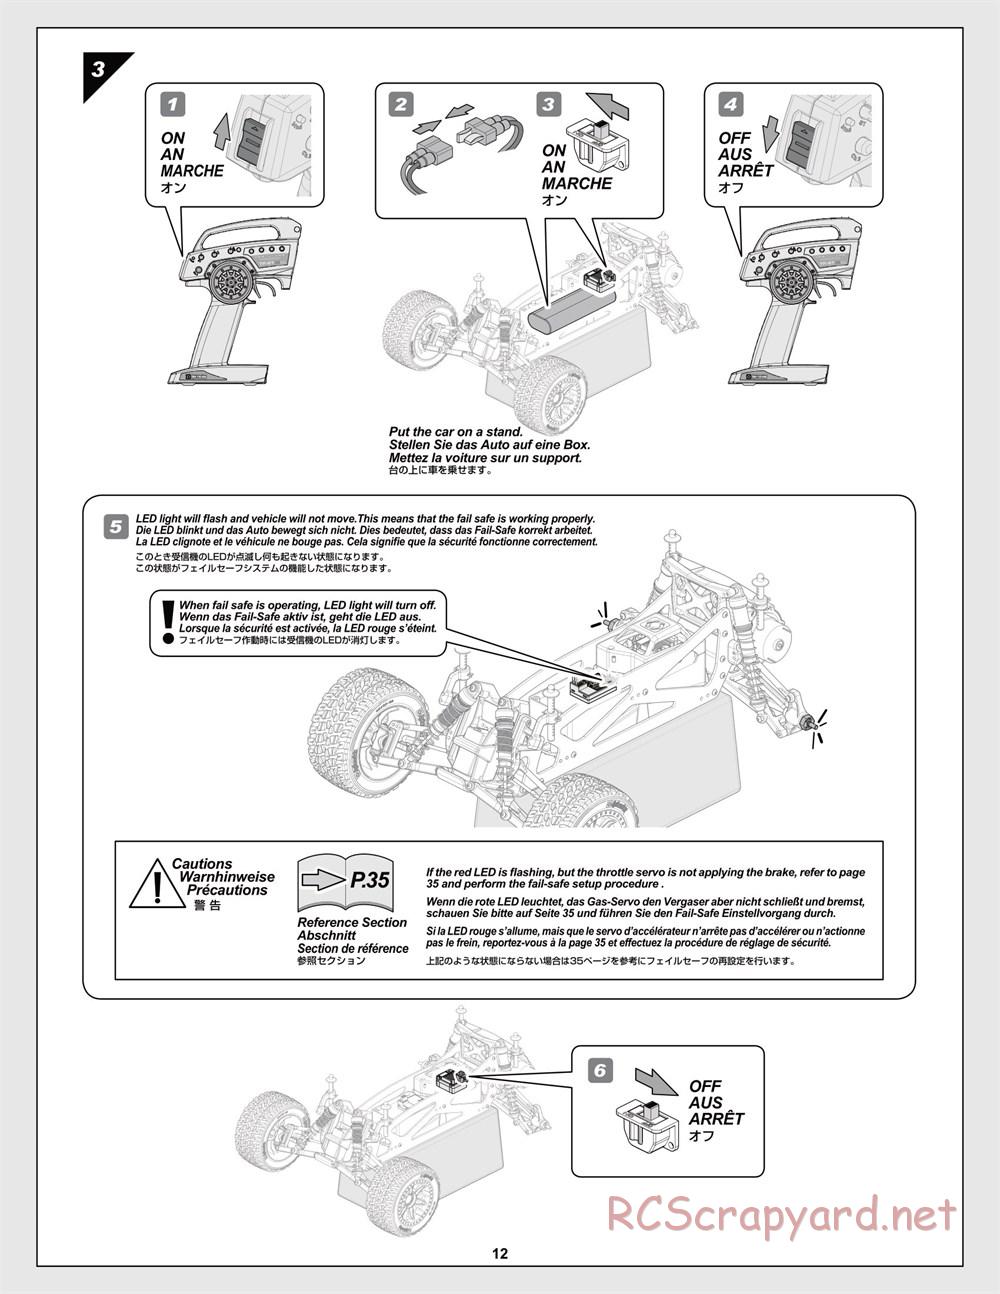 HPI - Jumpshot MT V2 - Manual - Page 12